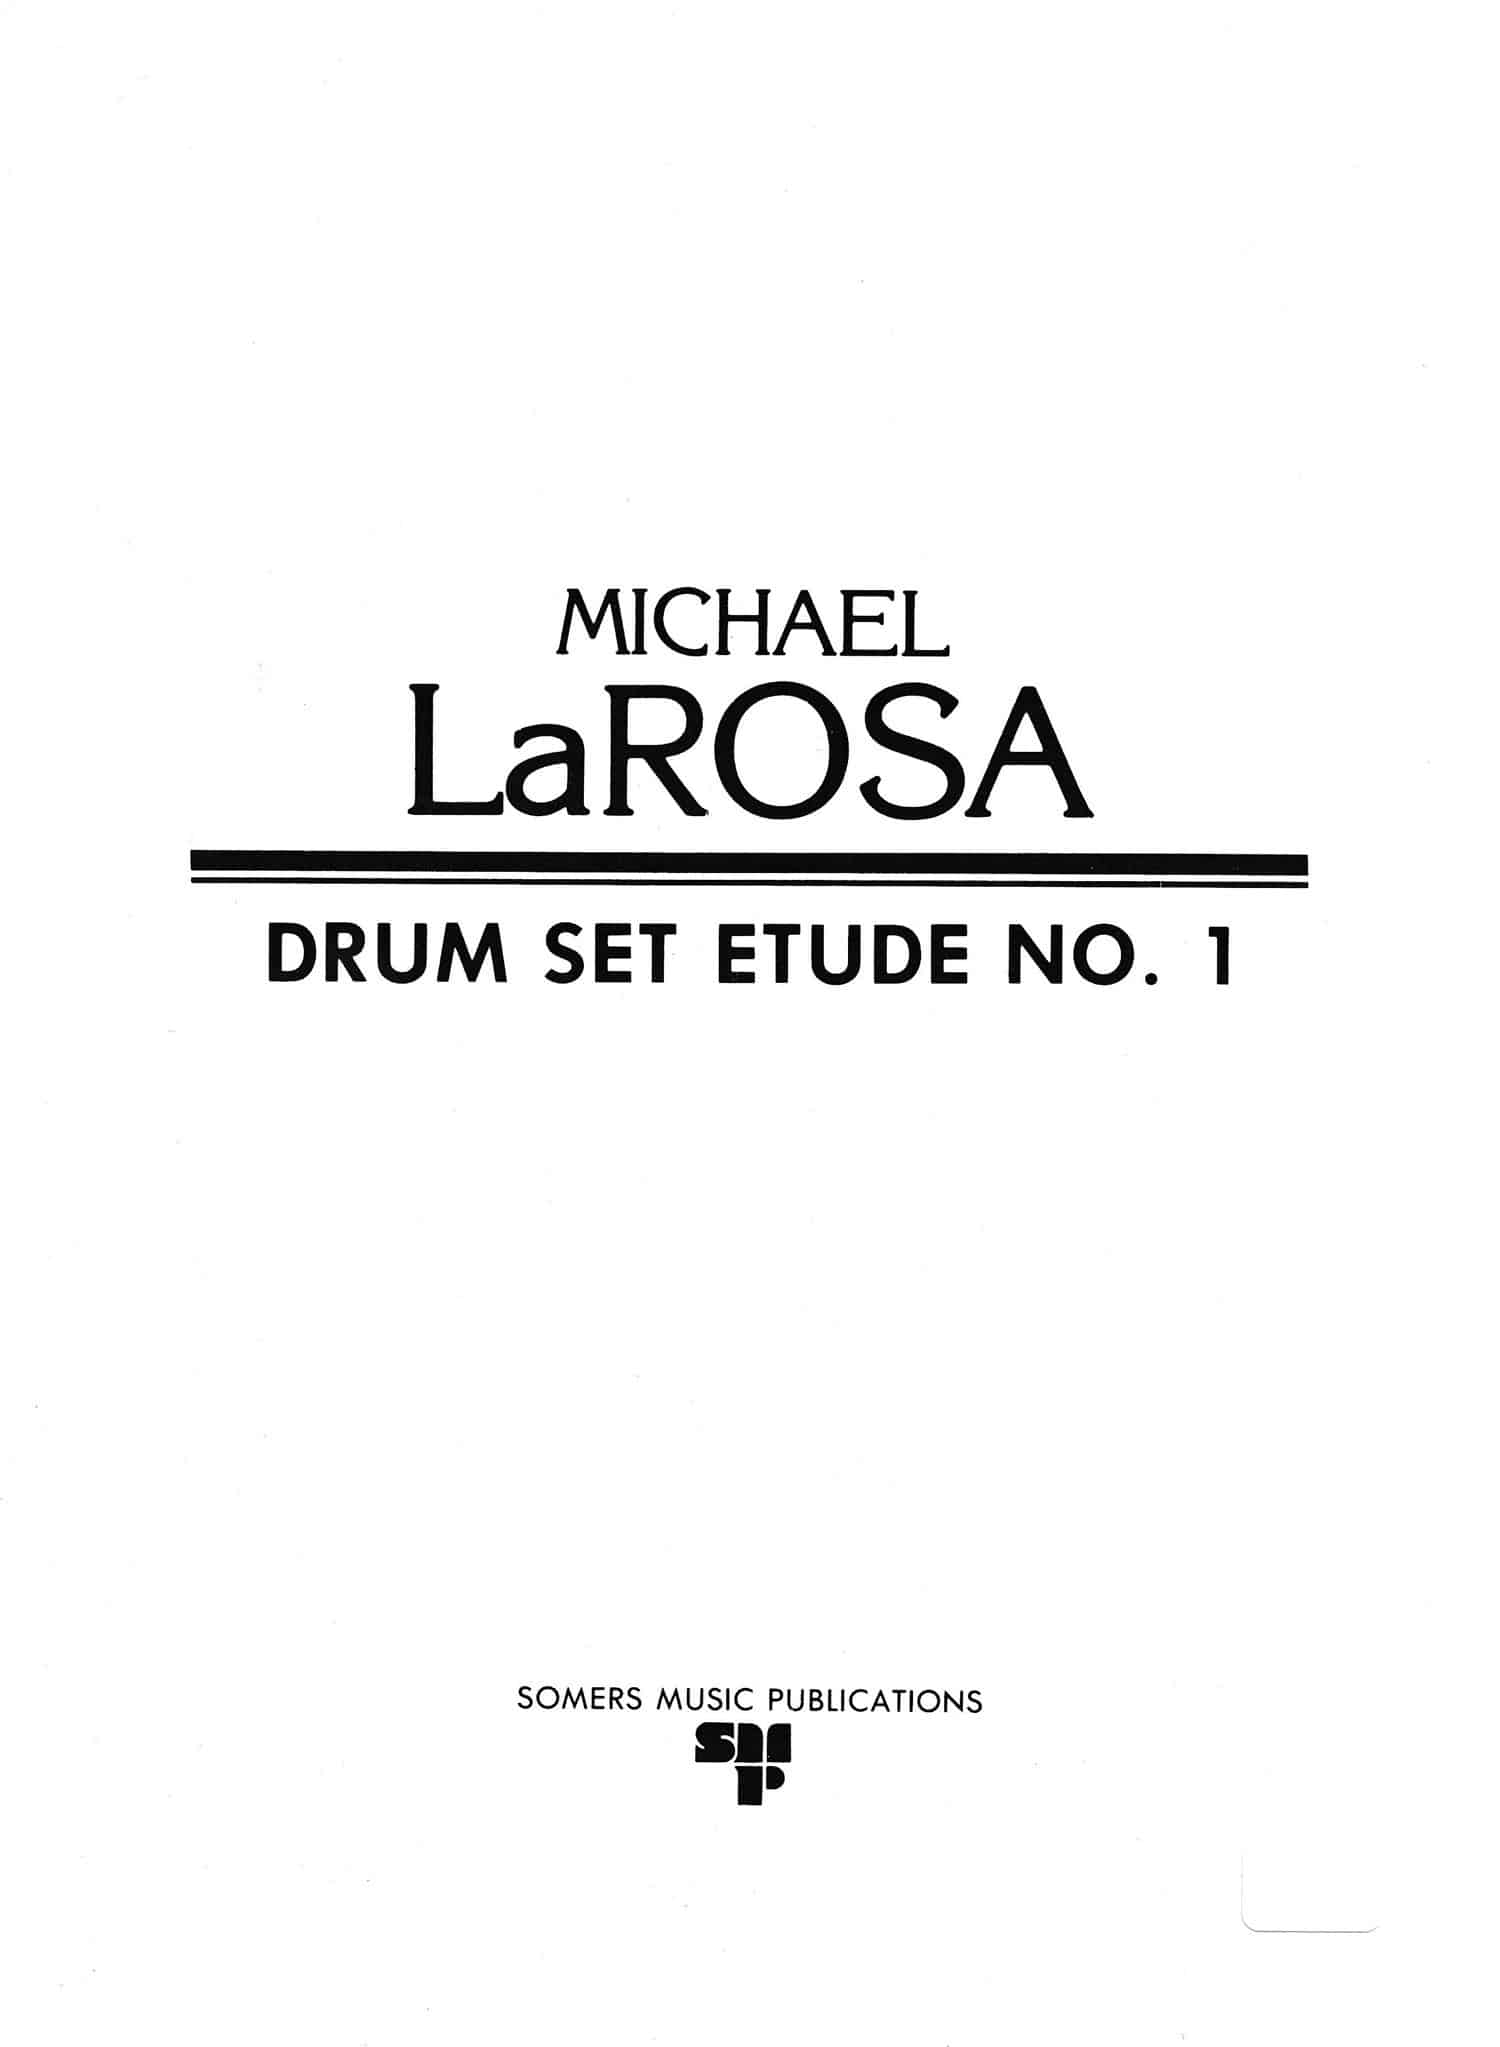 Drum Set Etude No. 1